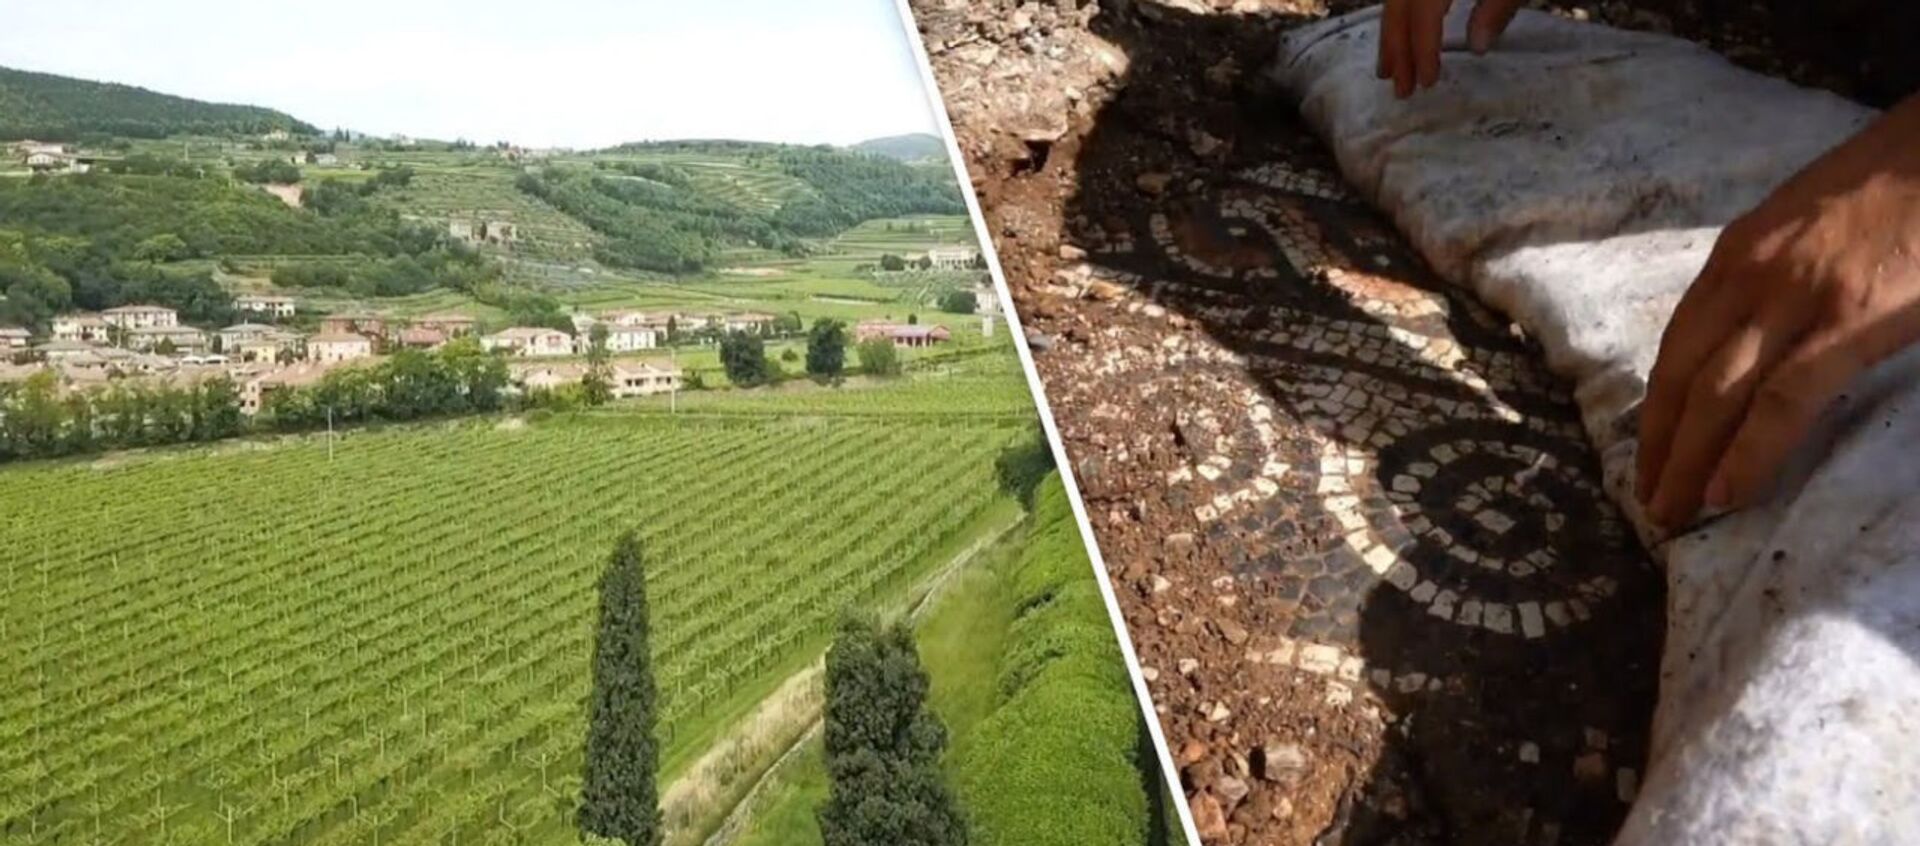 «Крупнейшее открытие года»: итальянские археологи обнаружили античную мозаику под виноградниками - Sputnik Армения, 1920, 31.05.2020